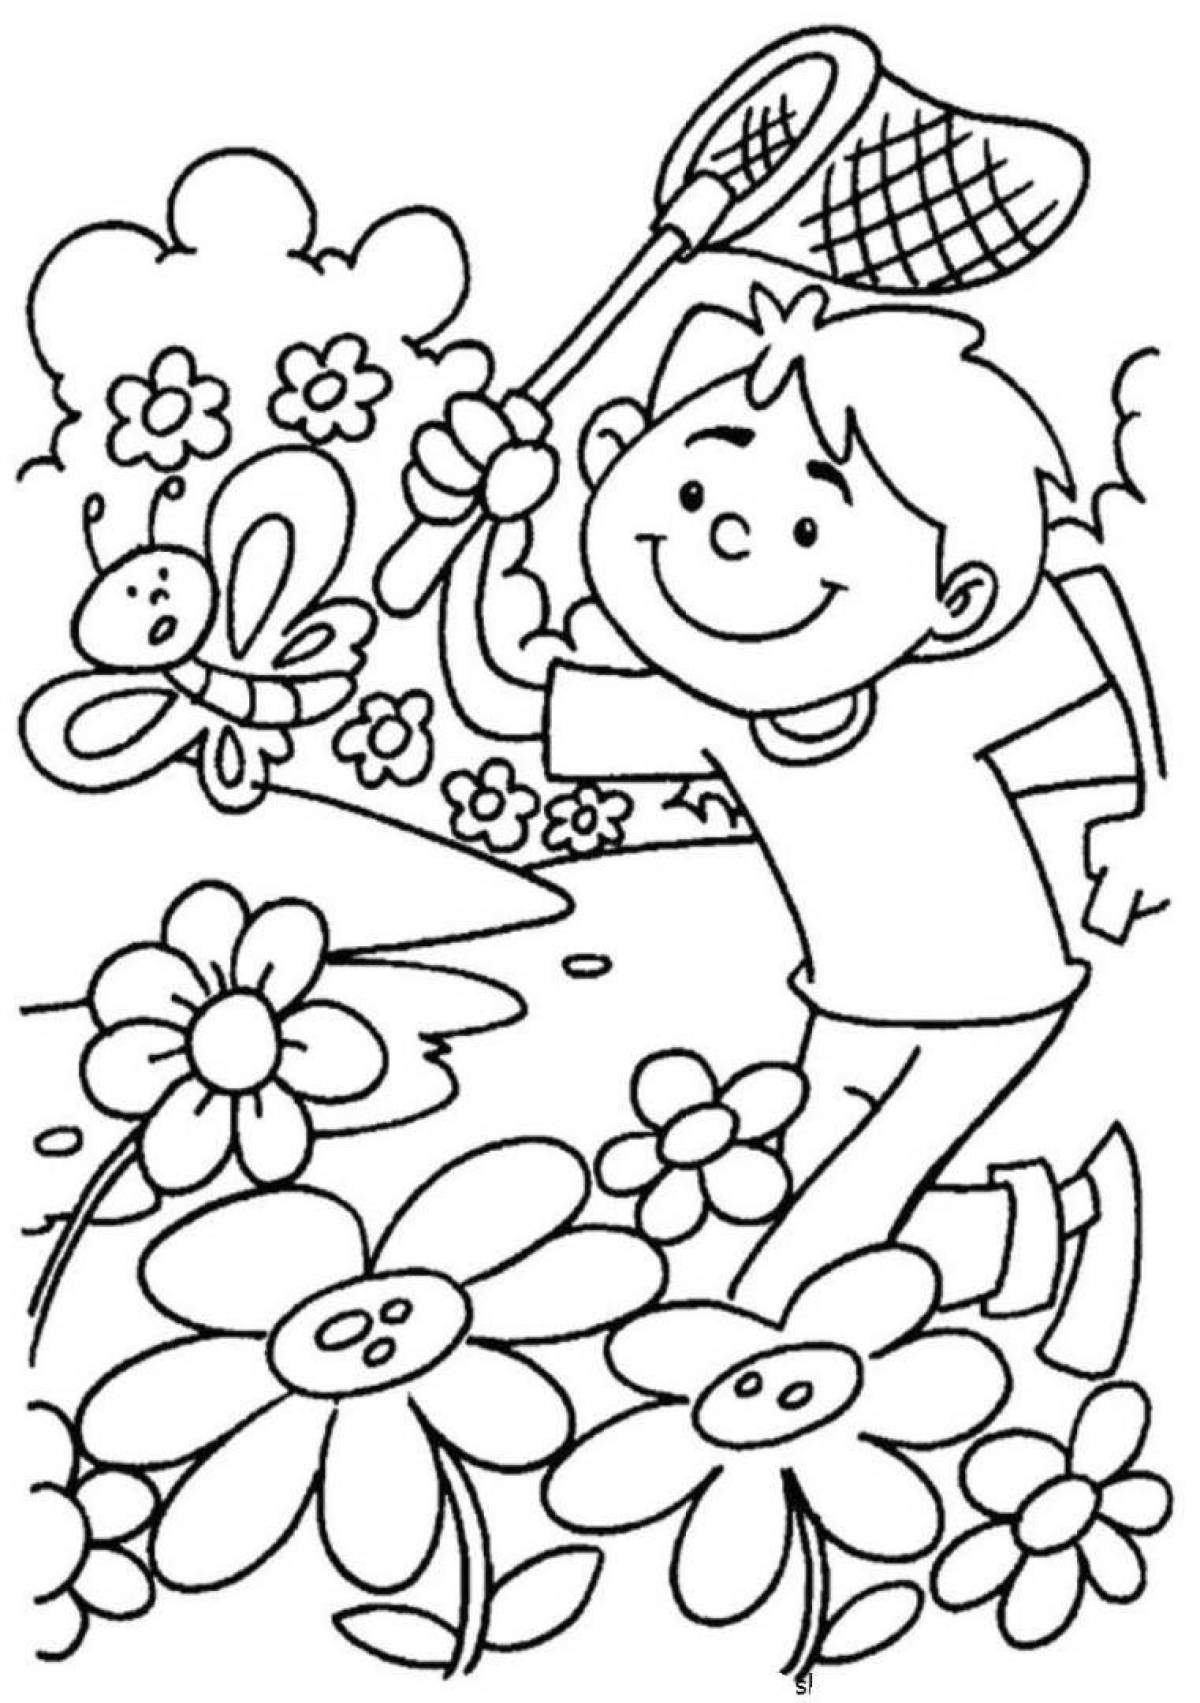 Детские раскраски на летнюю тематику для детей